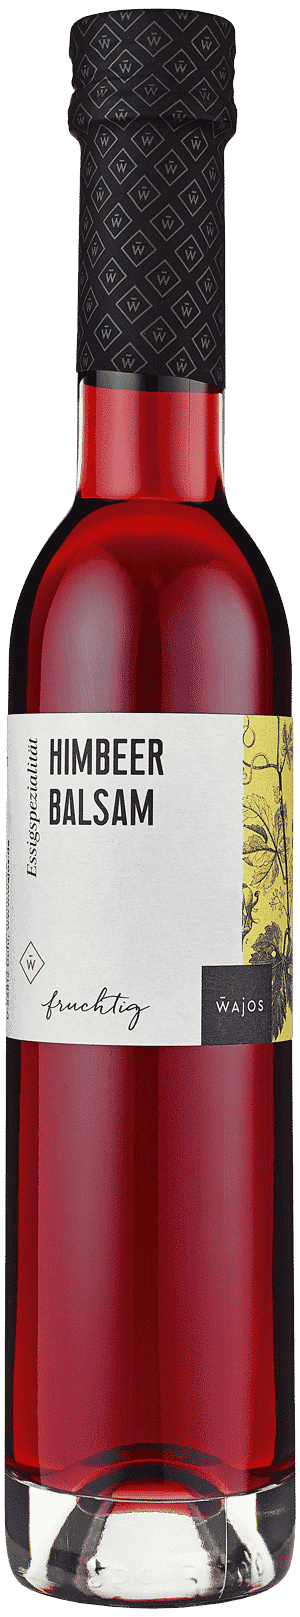 Himbeer Balsam